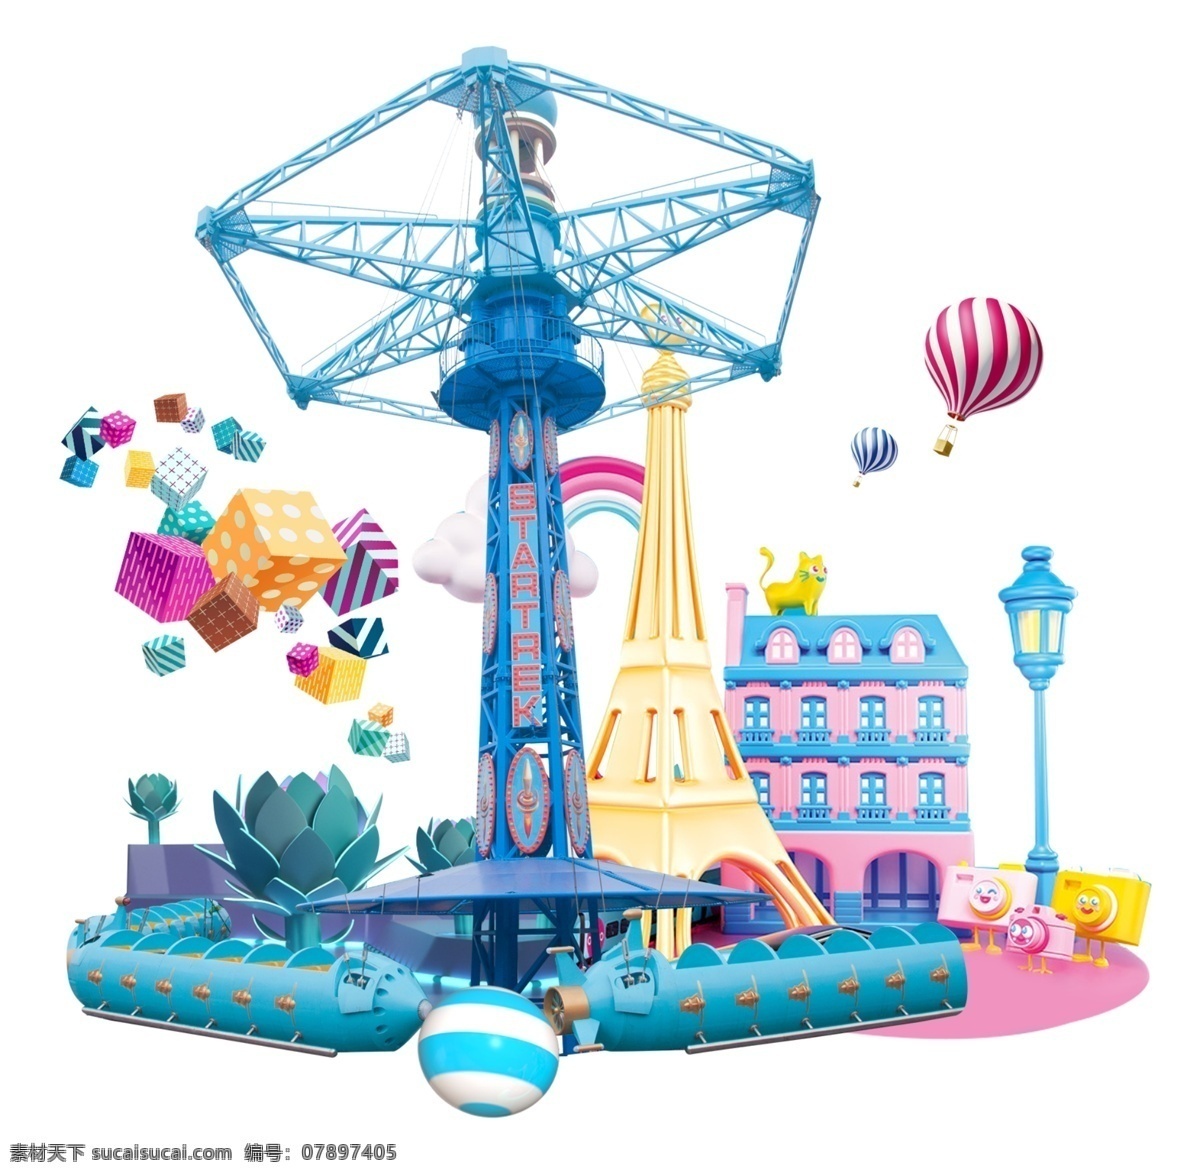 游乐设施 欢乐 缤纷 气球 建筑 国内广告设计